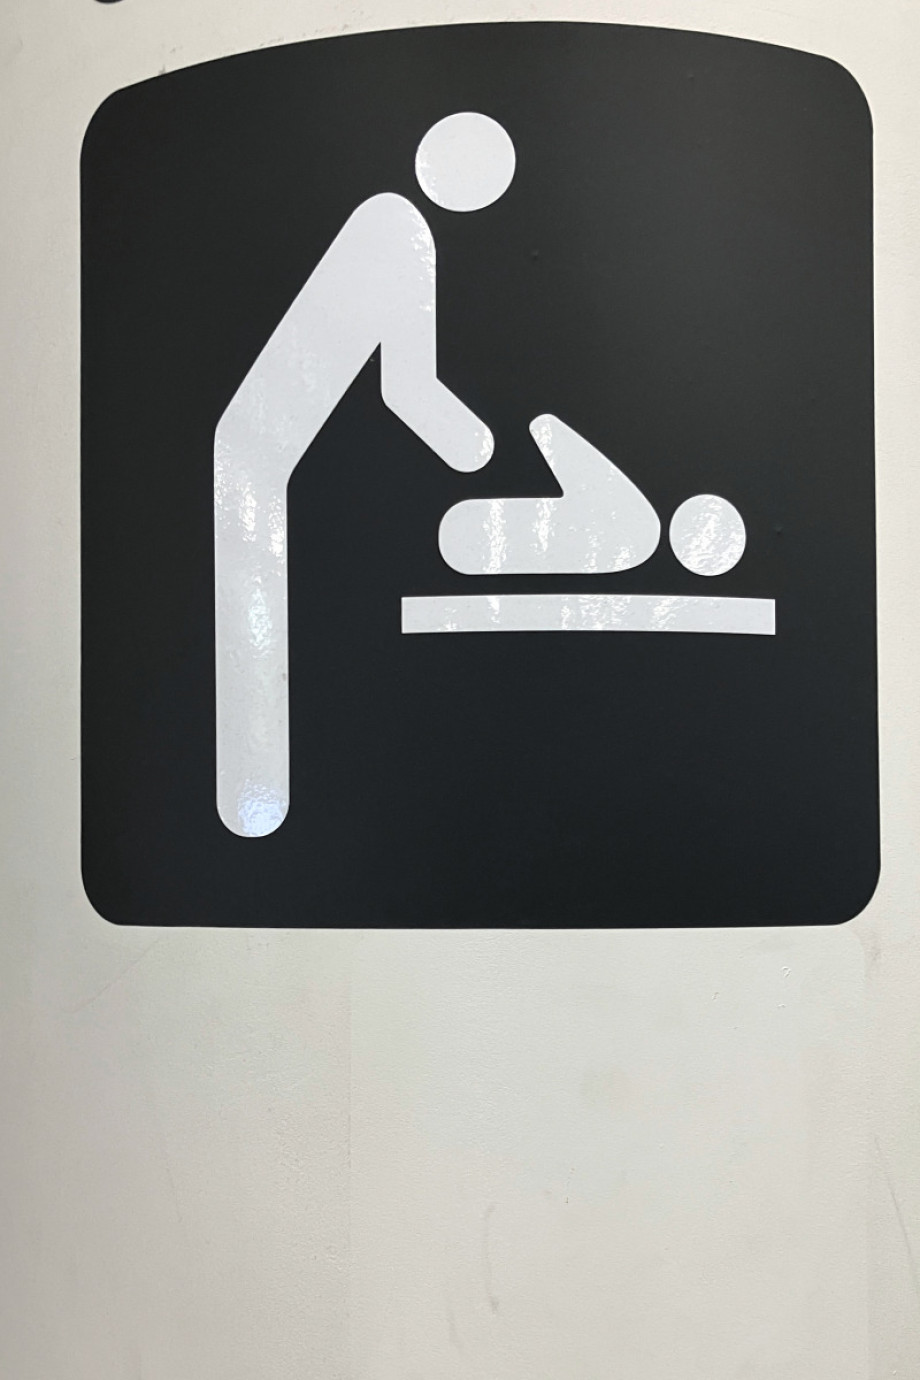 Туалет в зале регистраций брюссельского аэропорта. Изображение 4